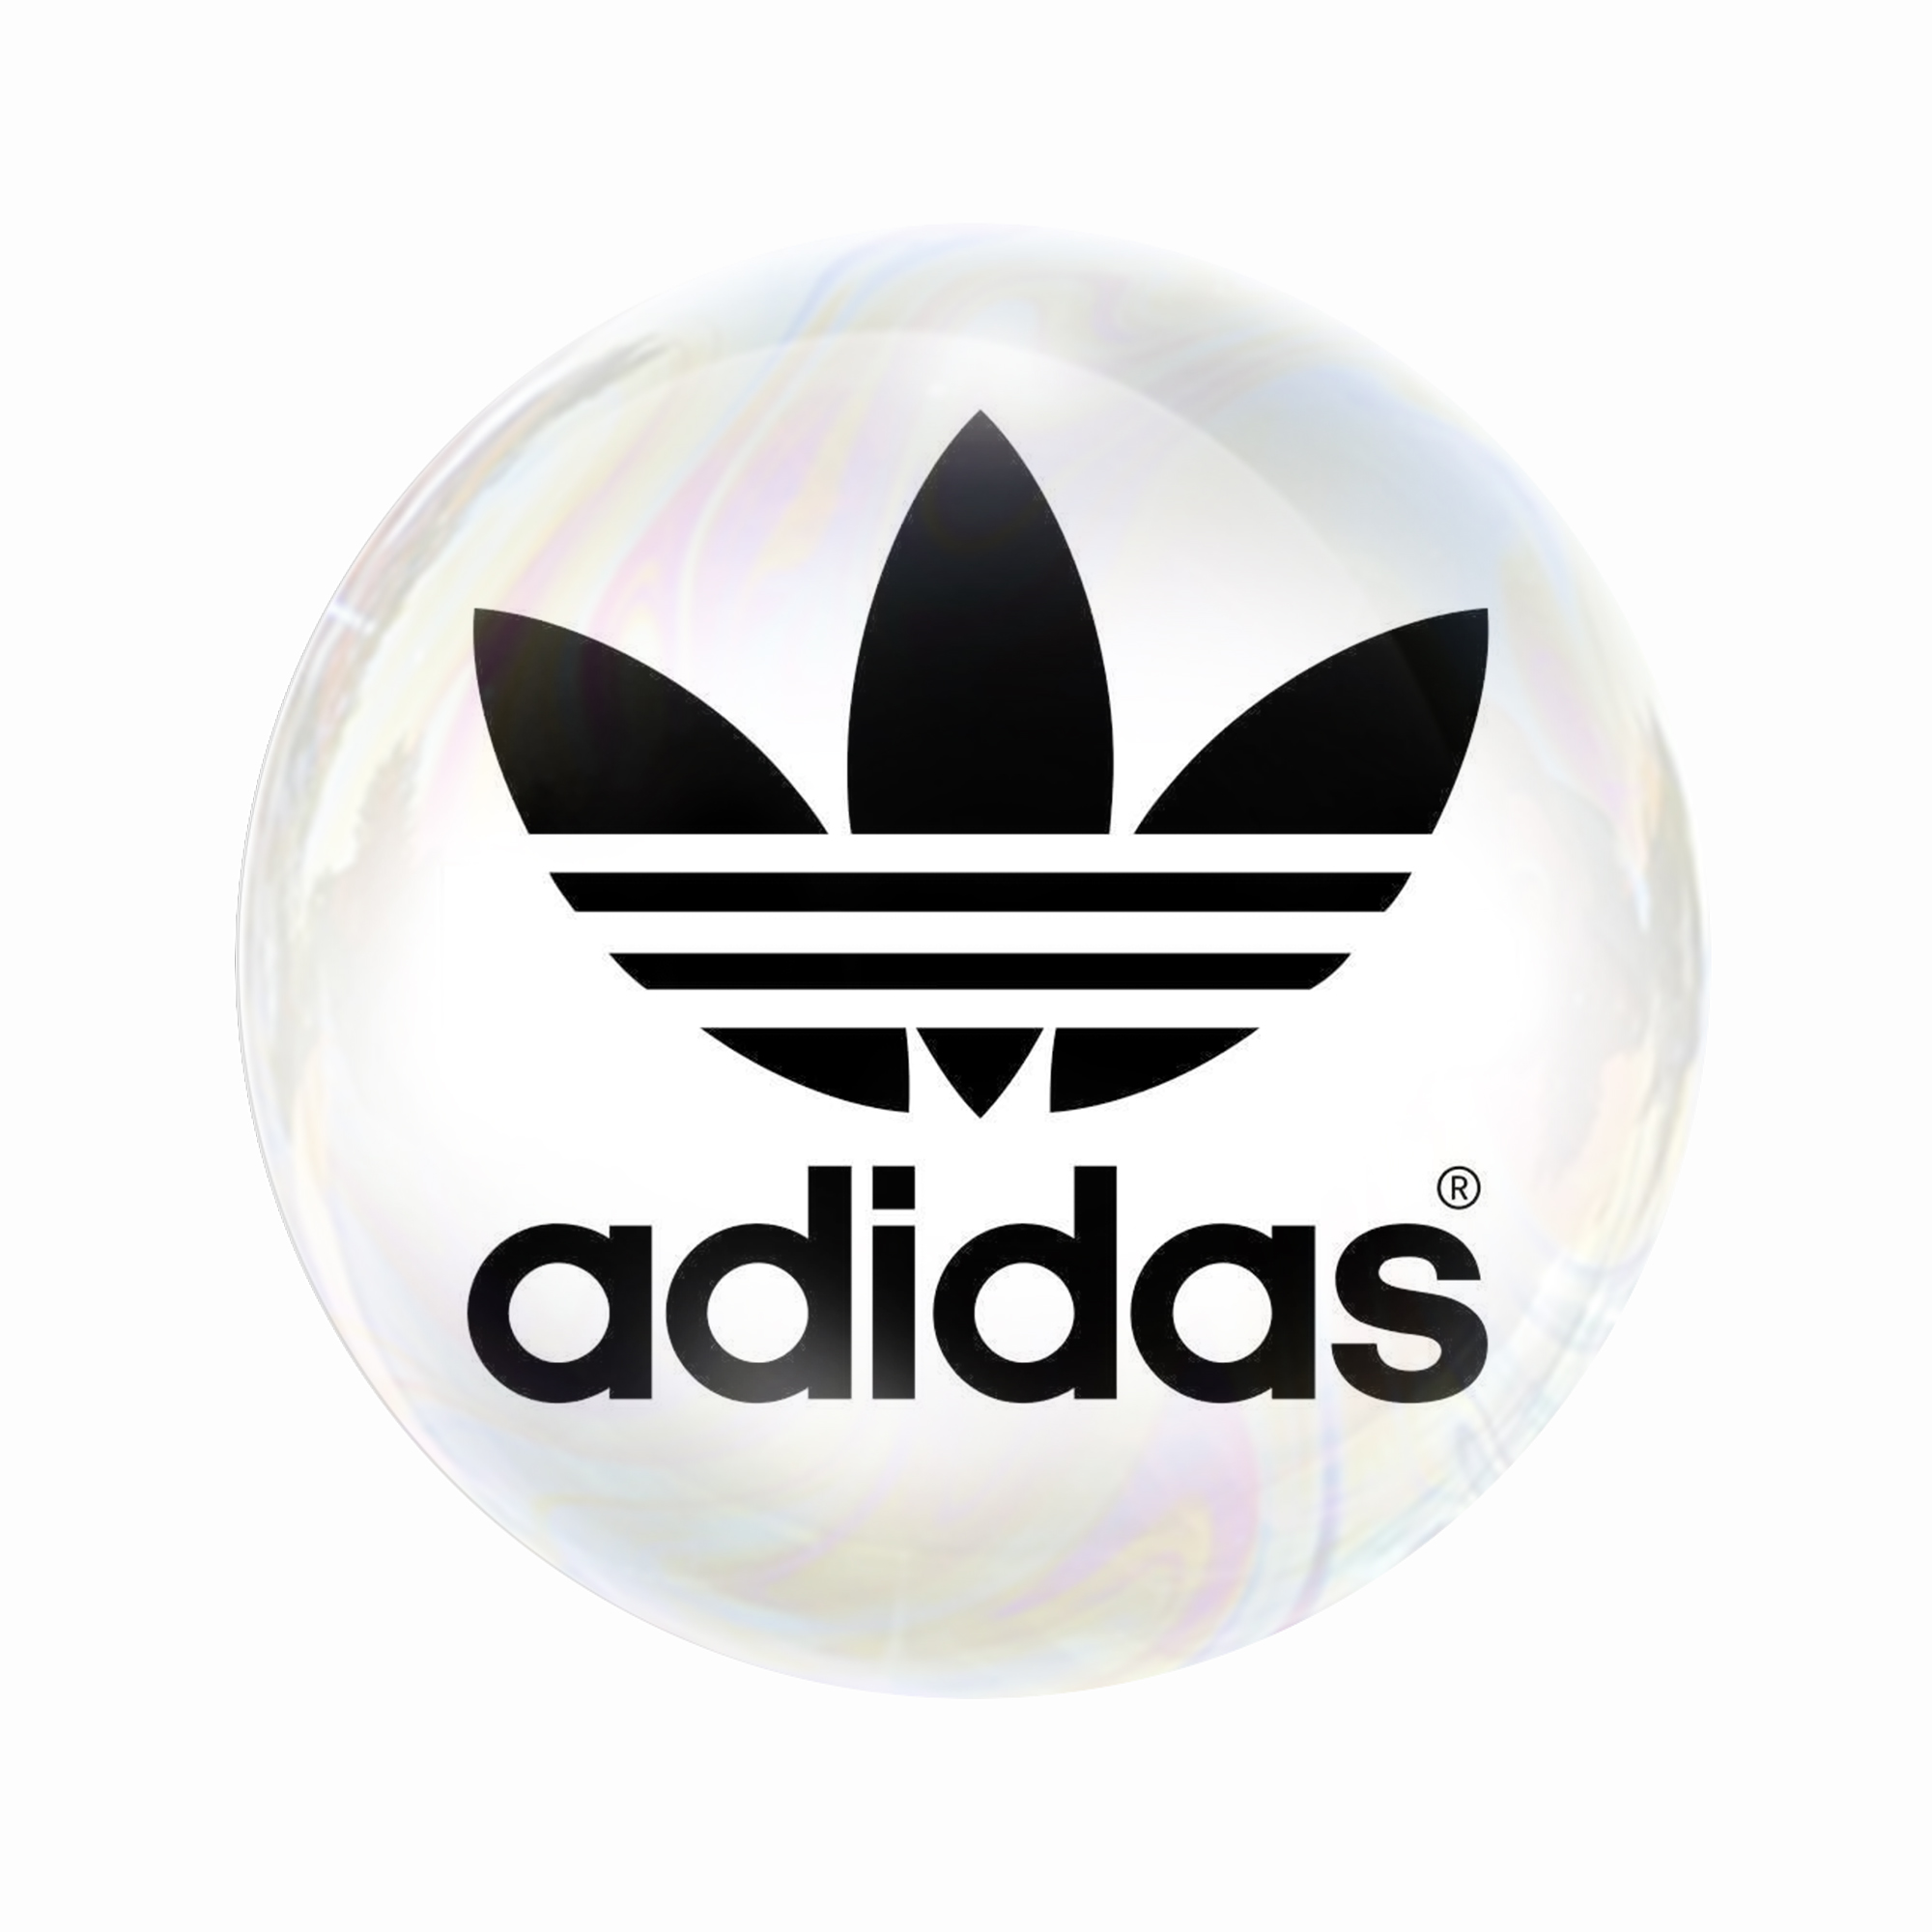  مگنت عرش طرح ورزشی آدیداس Adidas کد Asm4580 